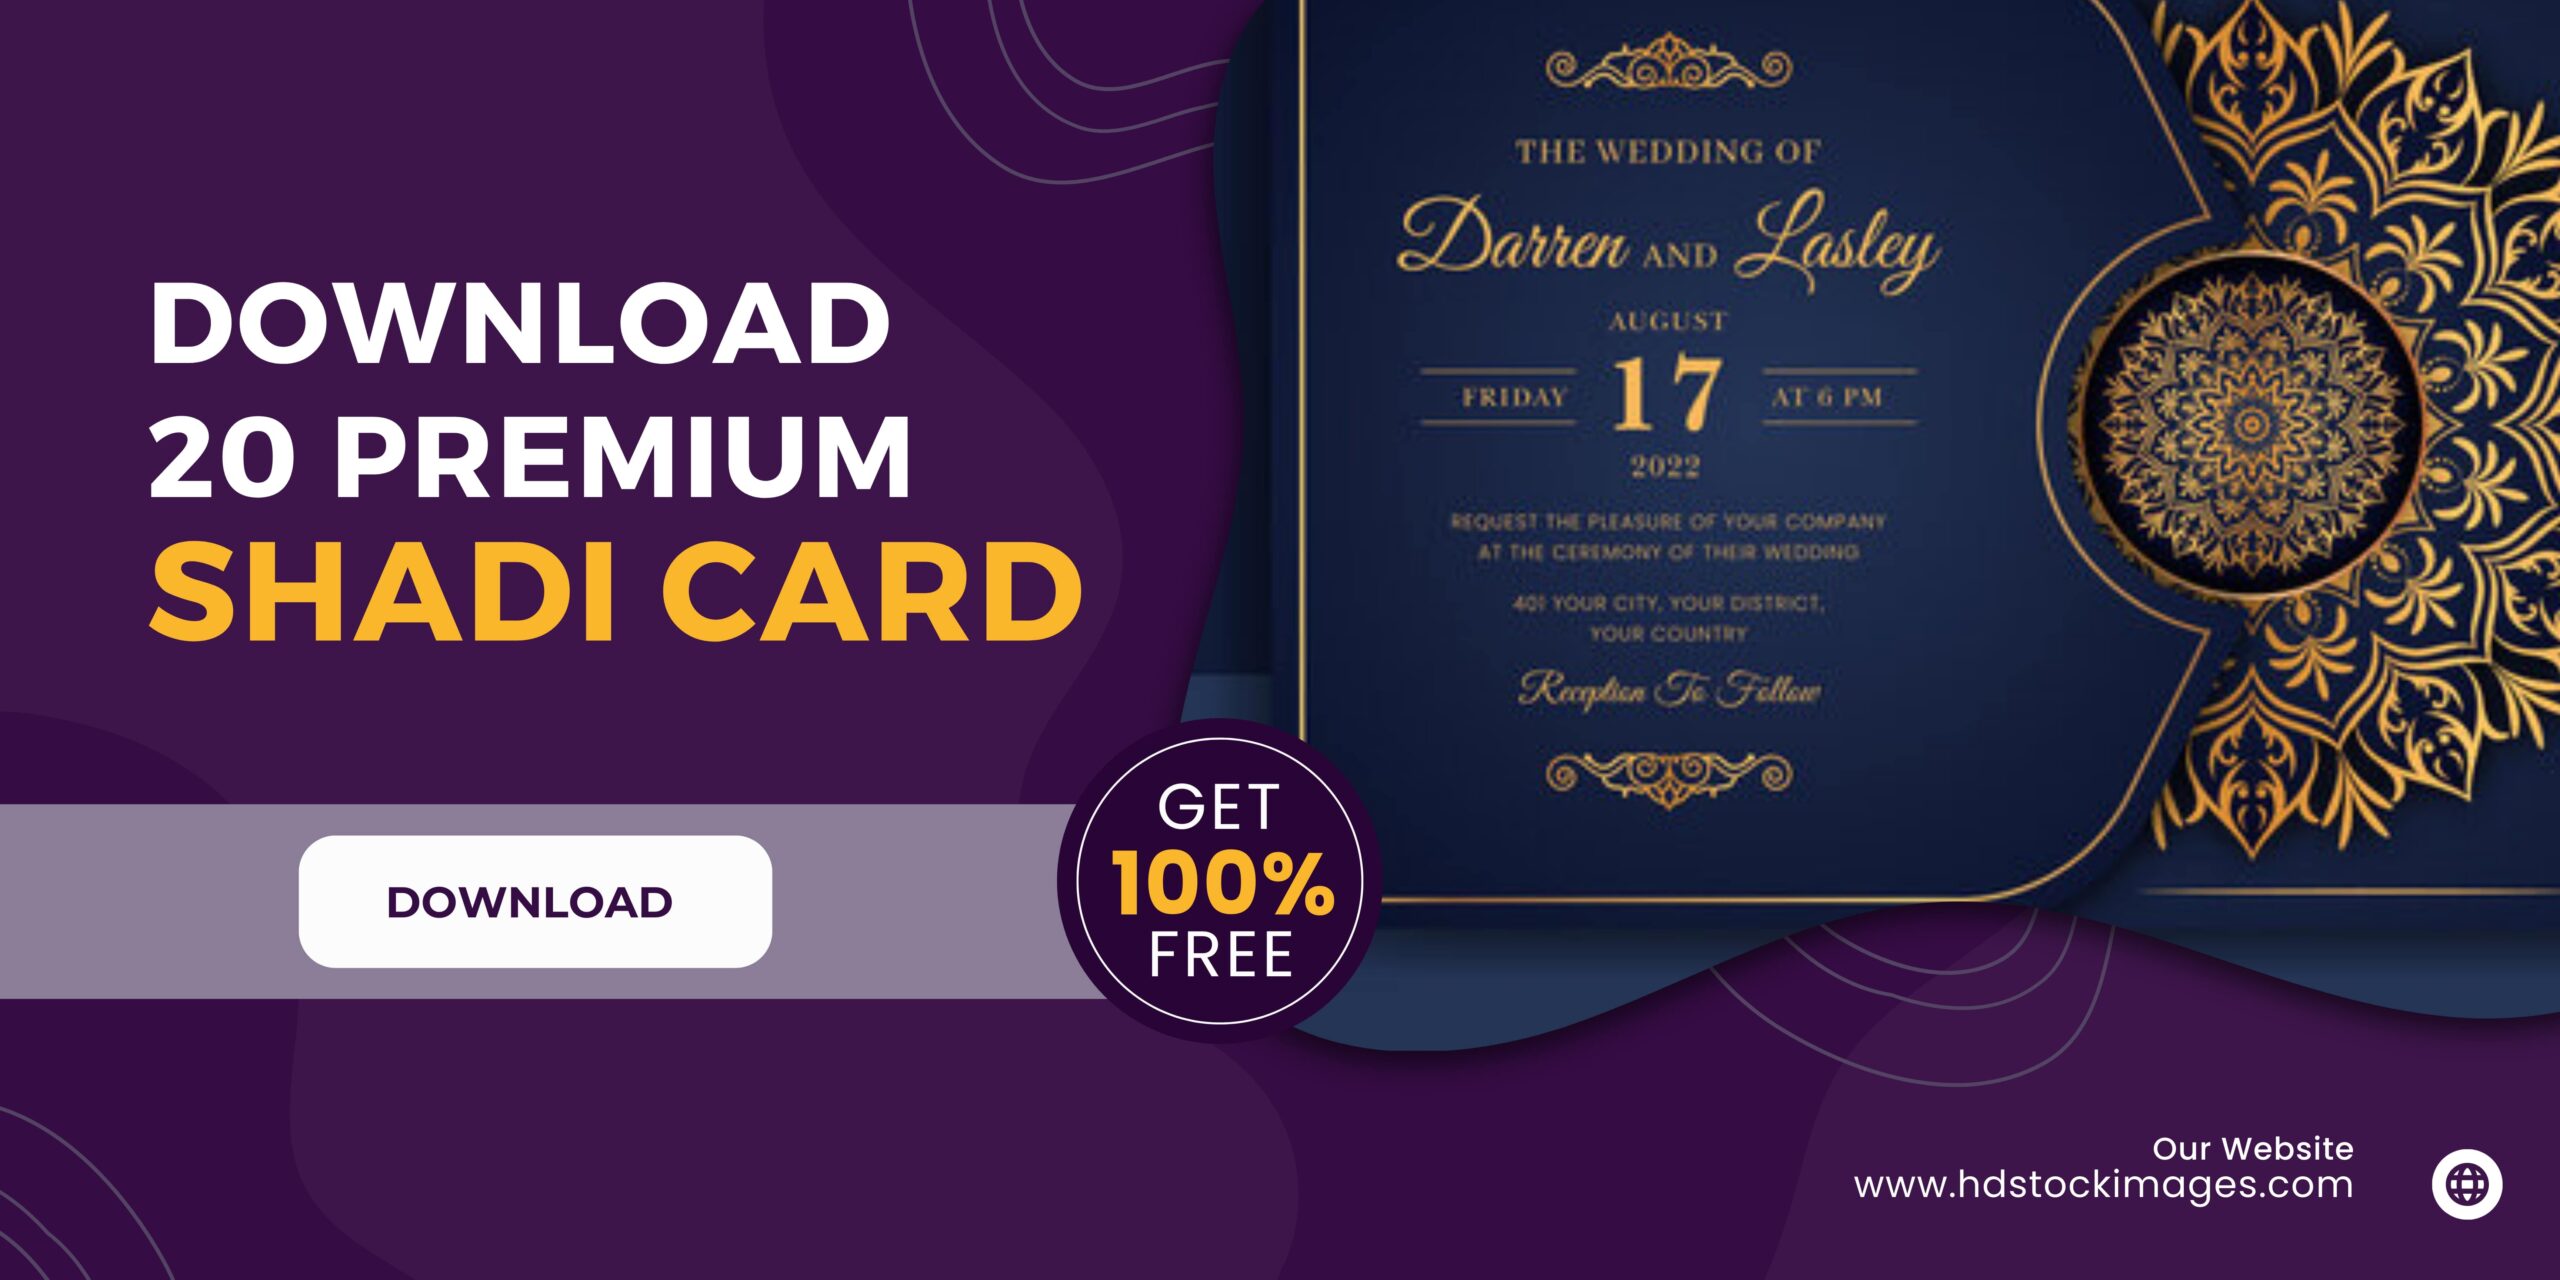 Download 20 Premium Shadi Card Design for free